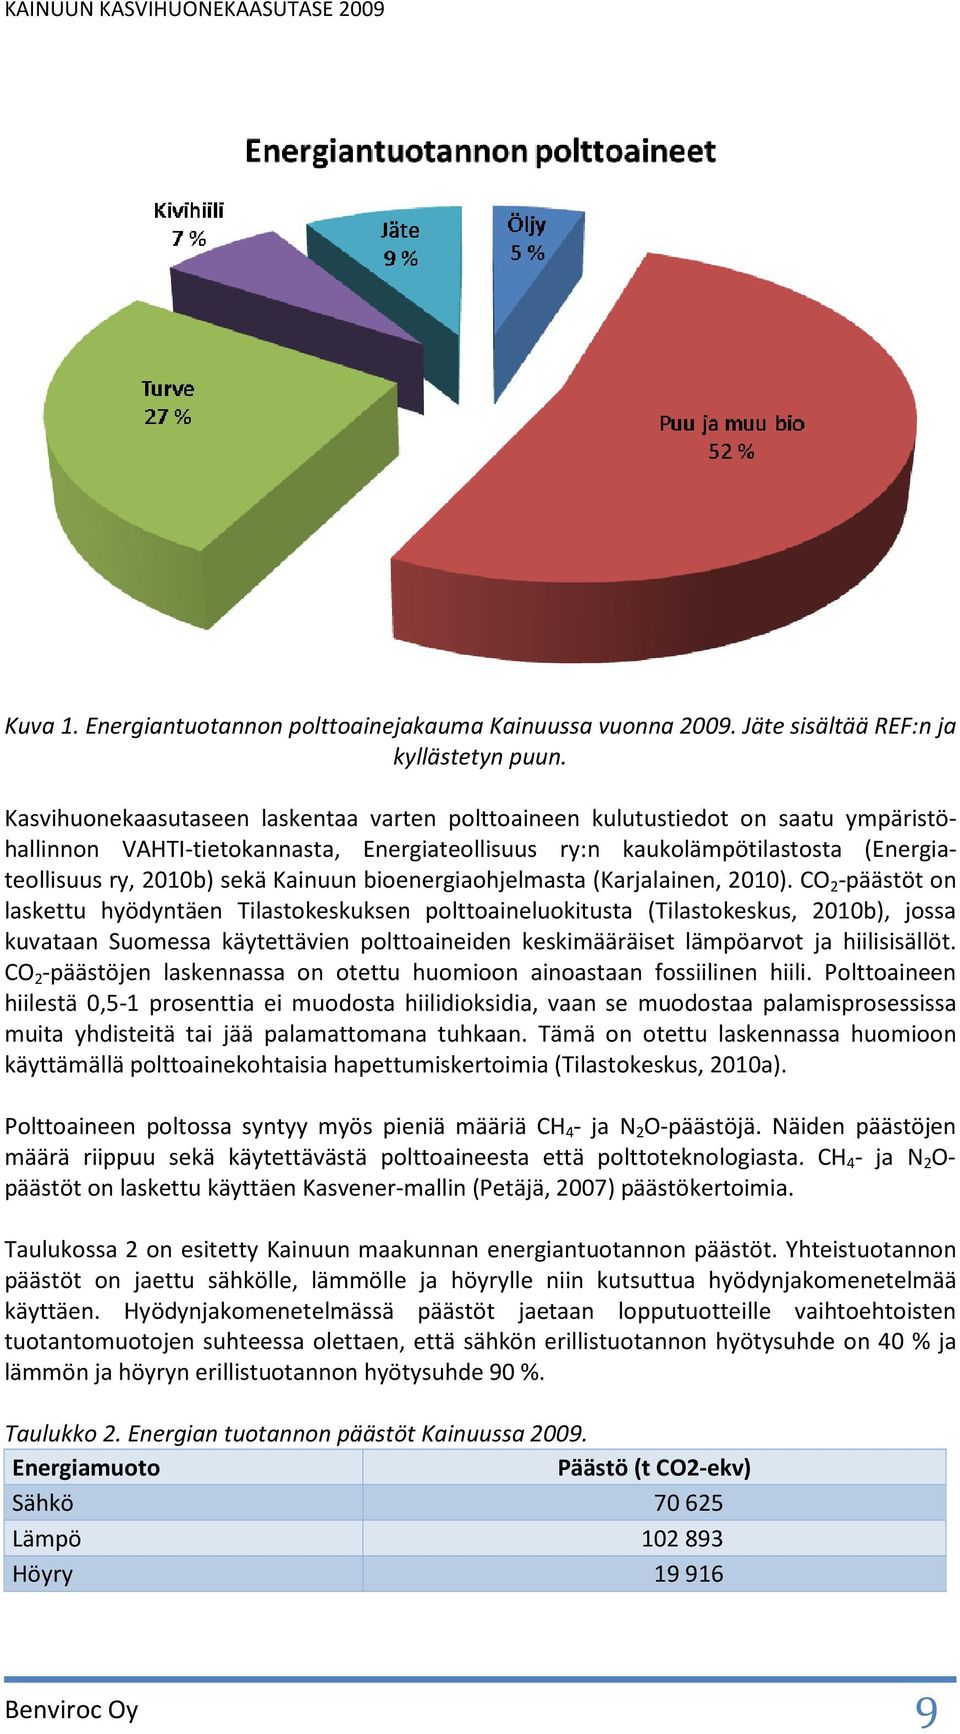 Kainuun bioenergiaohjelmasta (Karjalainen, 2010).